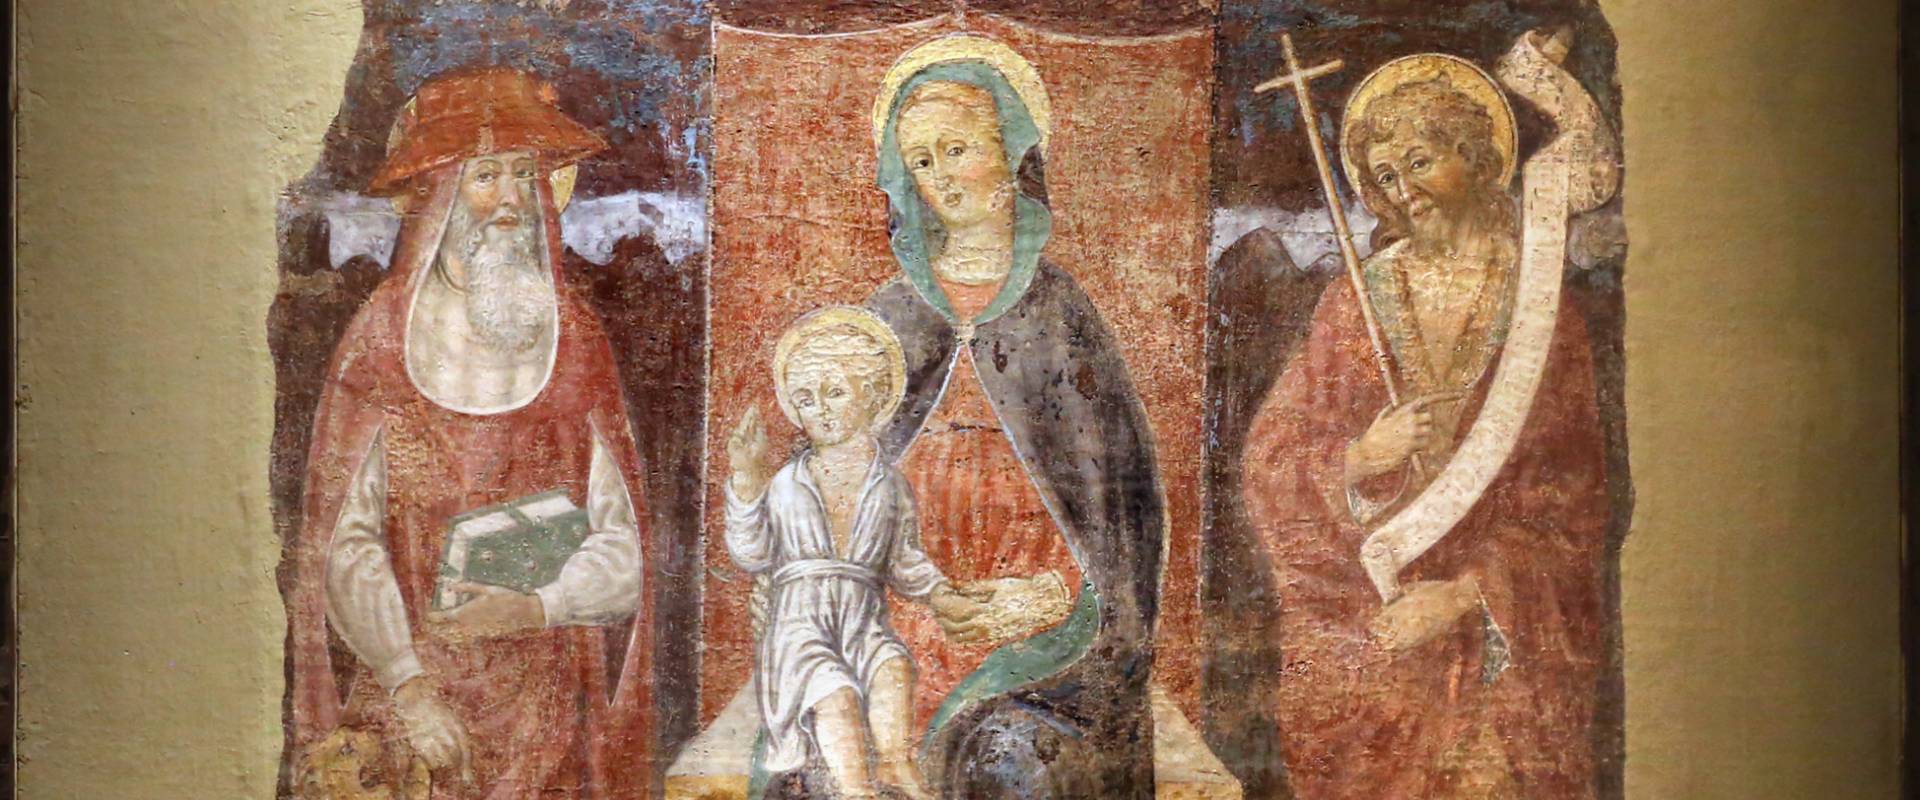 Jacopo loschi, madonna col bambino in trono tra i ss. girolamo e giovanni in battista, 1480-90 ca., fda s. girolamo a parma foto di Sailko